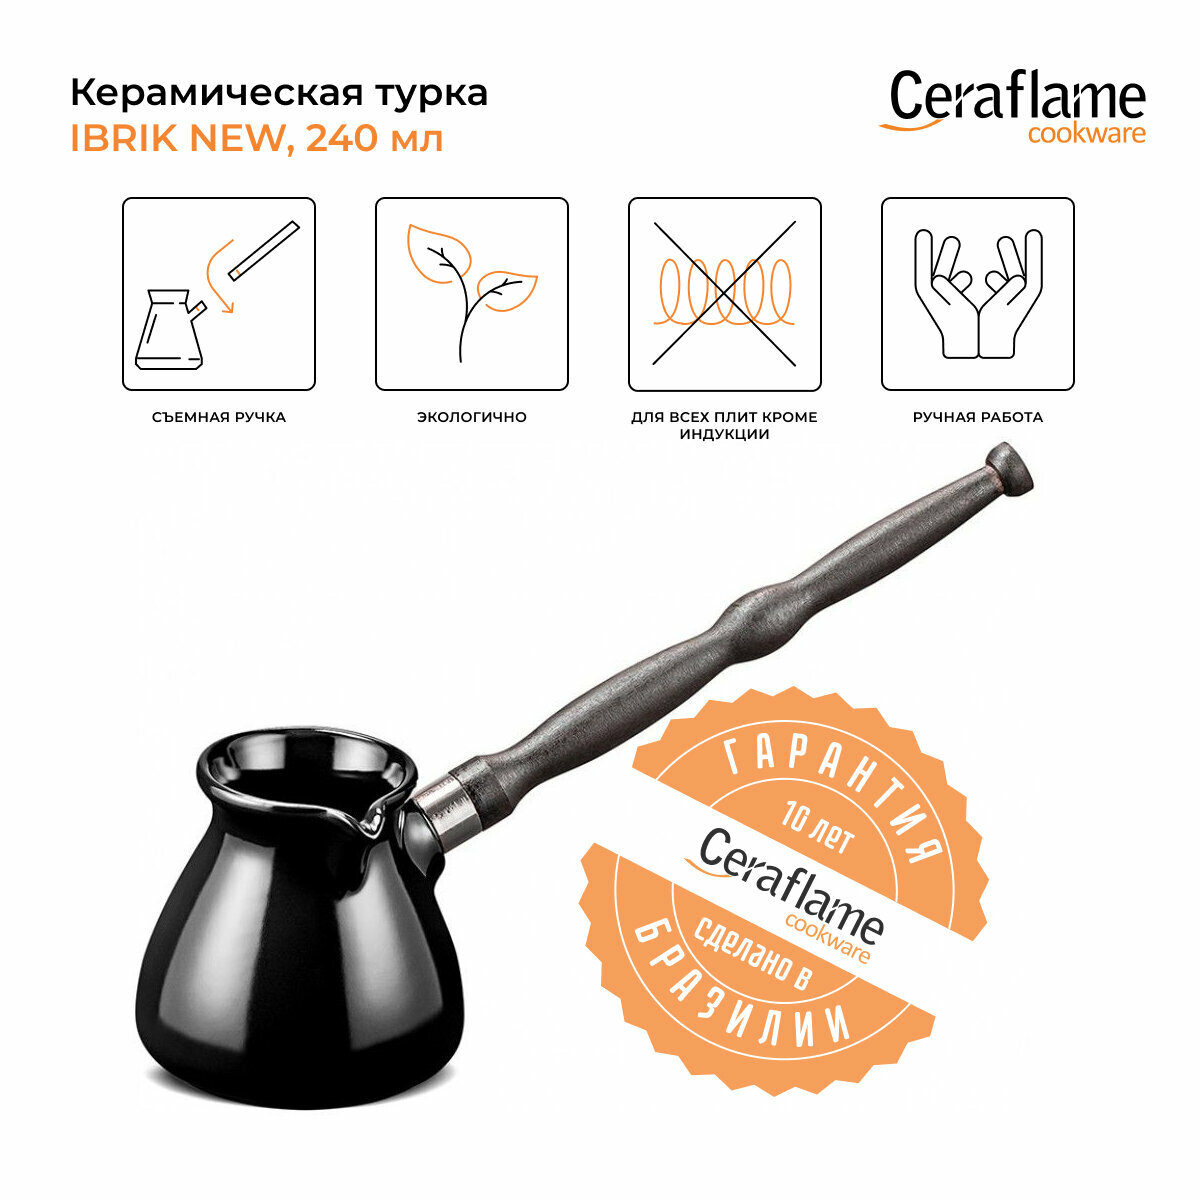 Турка керамическая для кофе Ceraflame Ibriks New, 240 мл, цвет черный